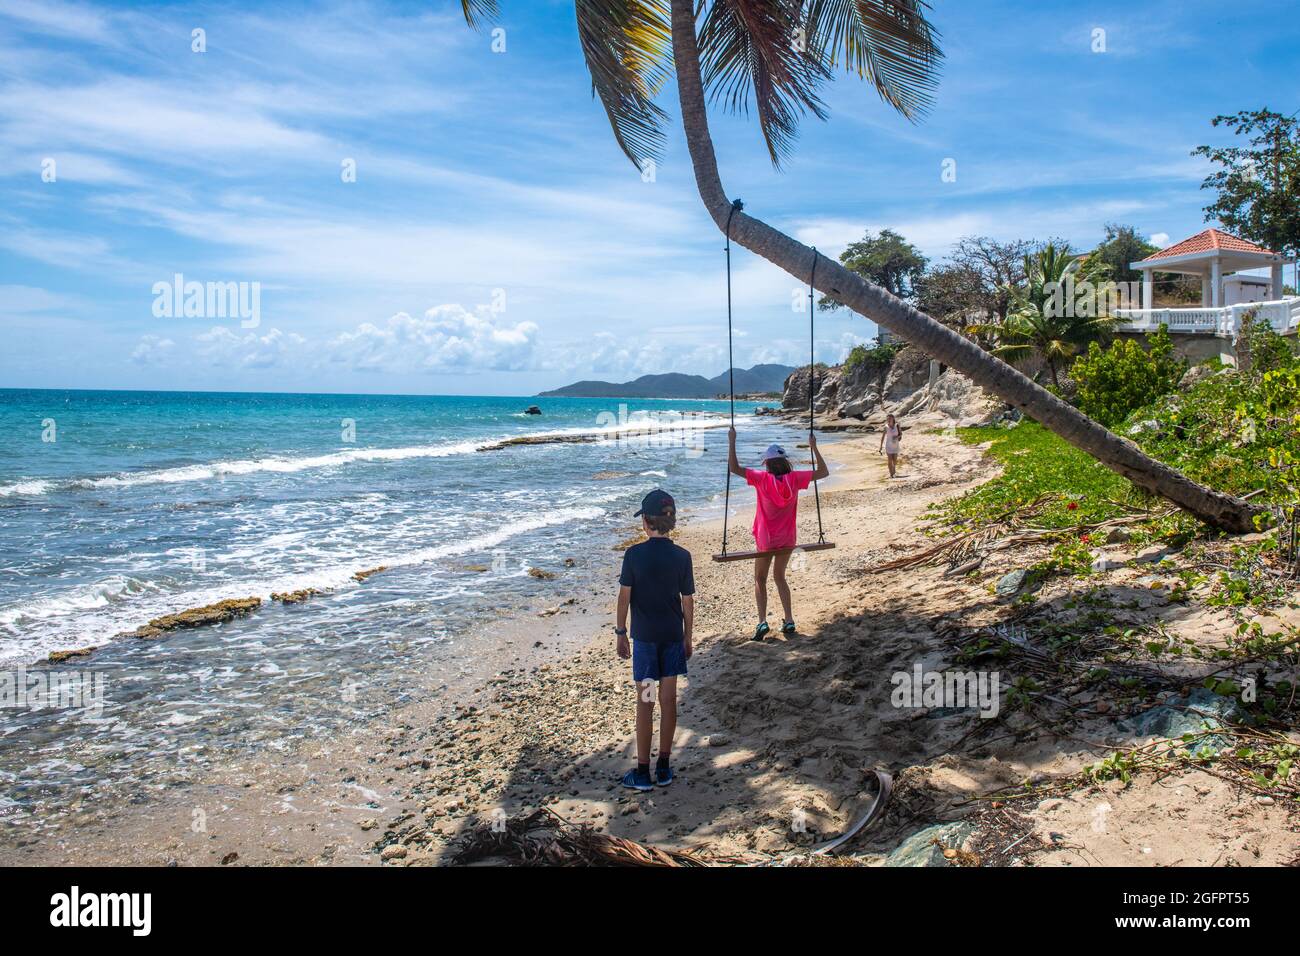 Leute am Strand mit Blick auf das Wasser - Puerto Rico Stockfoto